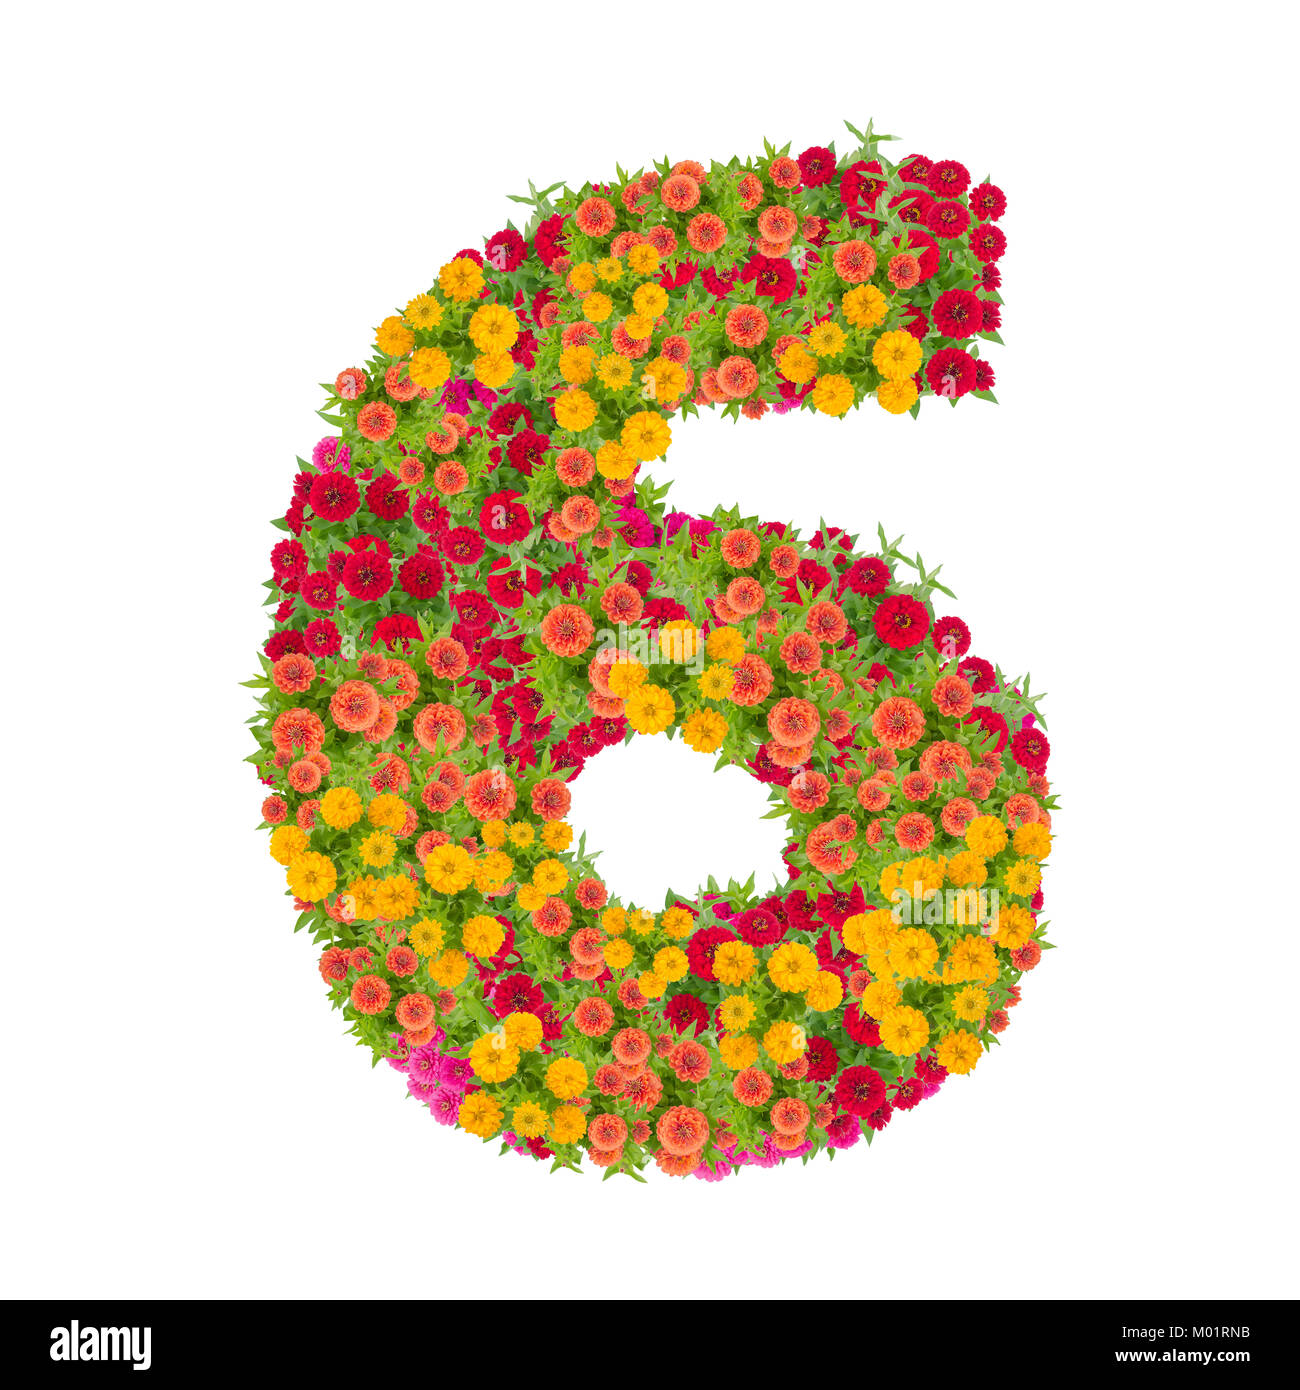 Nummer 6 von zinnien Blumen auf weißem Hintergrund gemacht. Farbenfrohe zinnia Blume in Nummer sechs Form mit Freistellungspfad Stockfoto